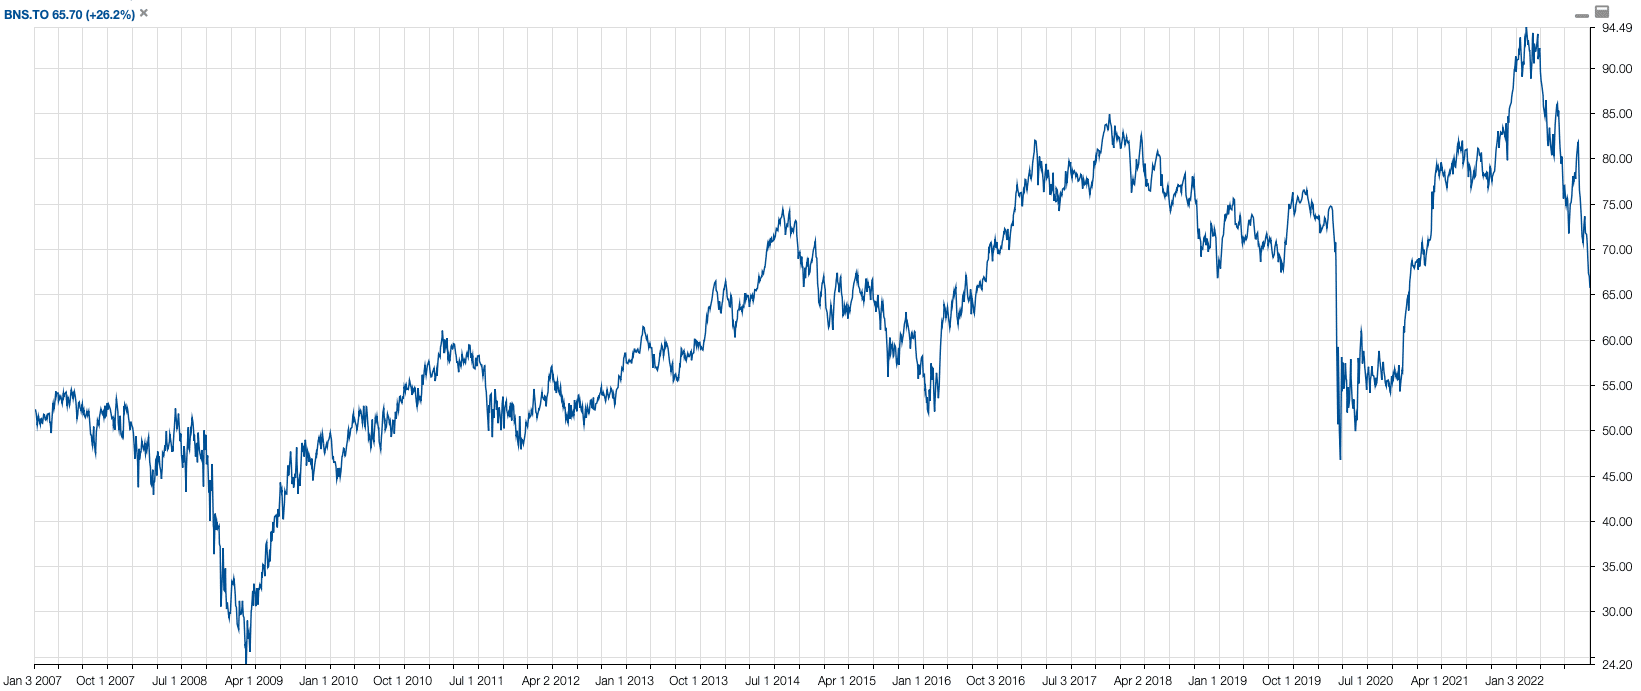 BNS Stock Chart September 2022